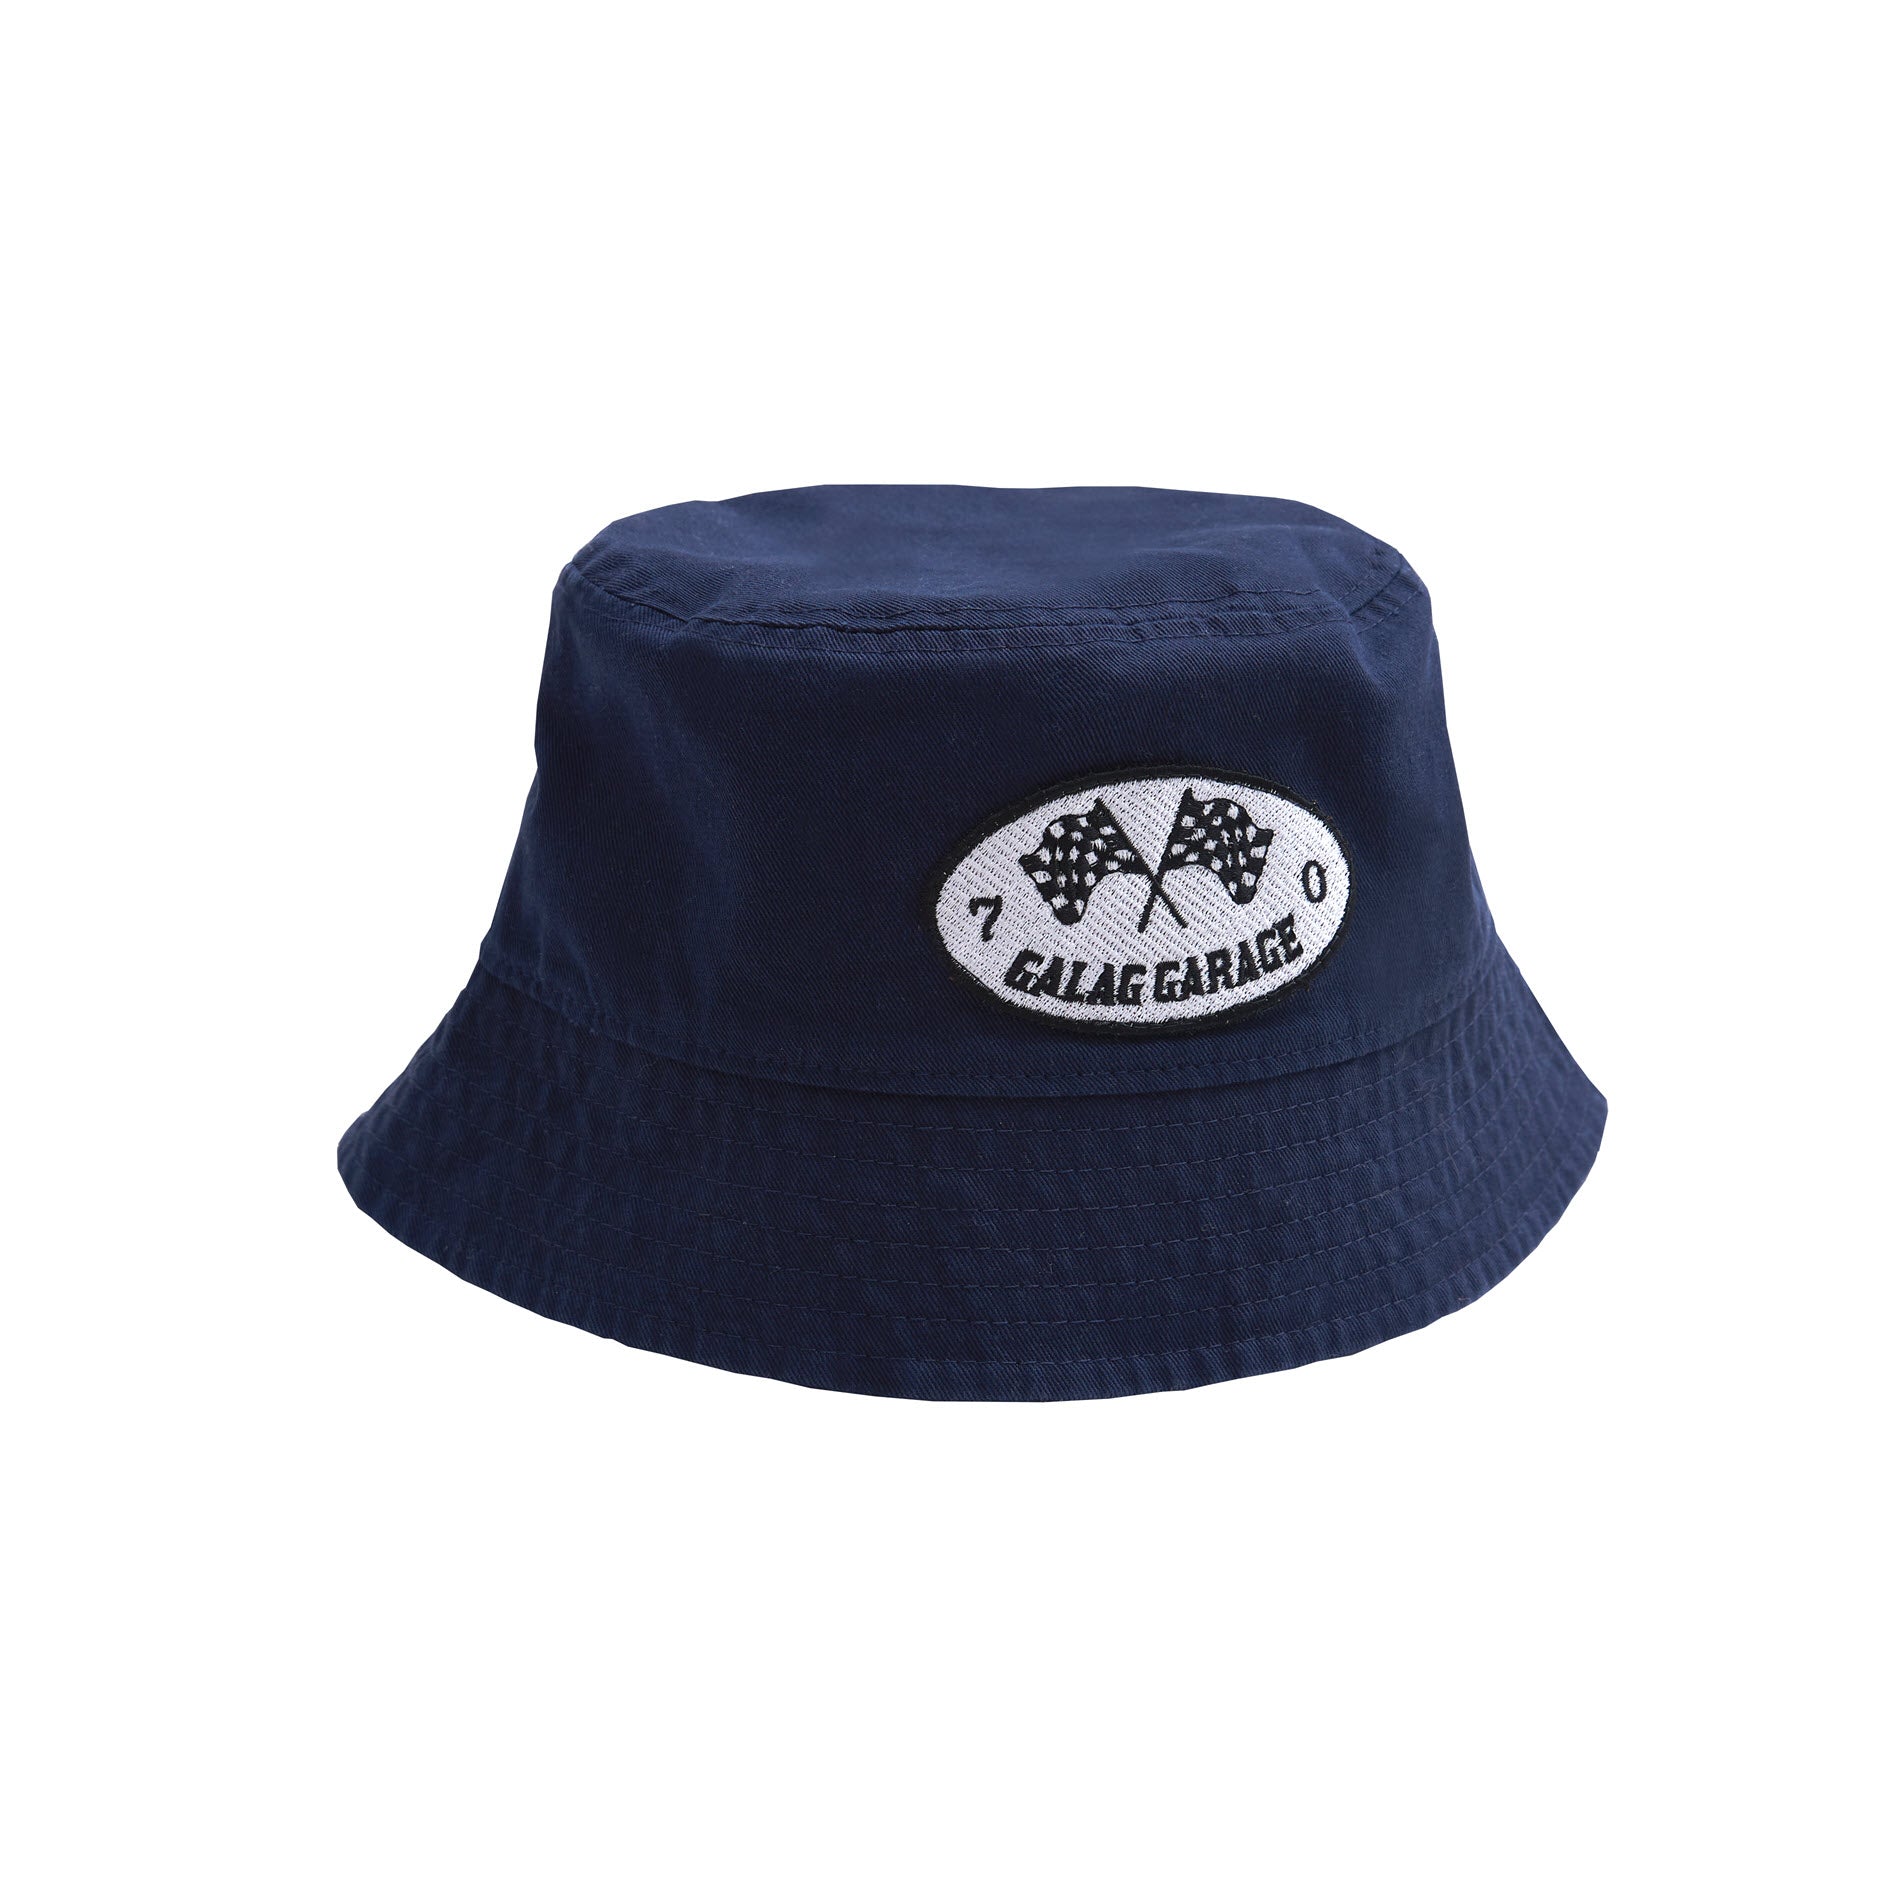 Galag Garage Bucket Hat